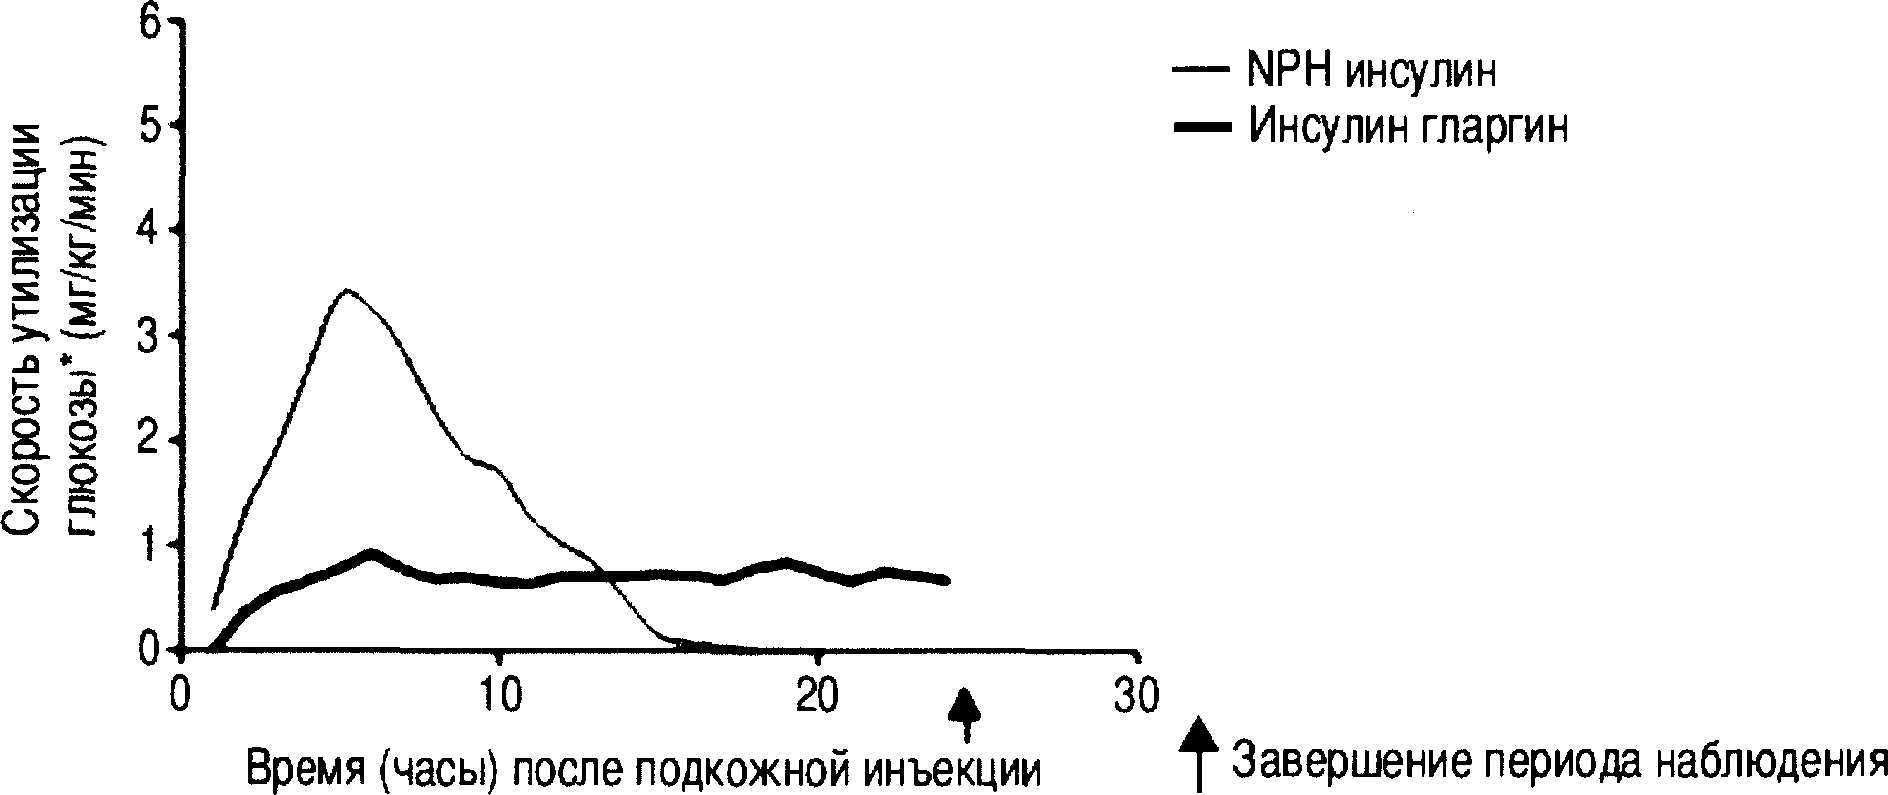 На следующем графике представлены результаты изучения профиля активности инсулина гларгина и НПХ-инсулина у больных сахарным диабетом 1 типа.